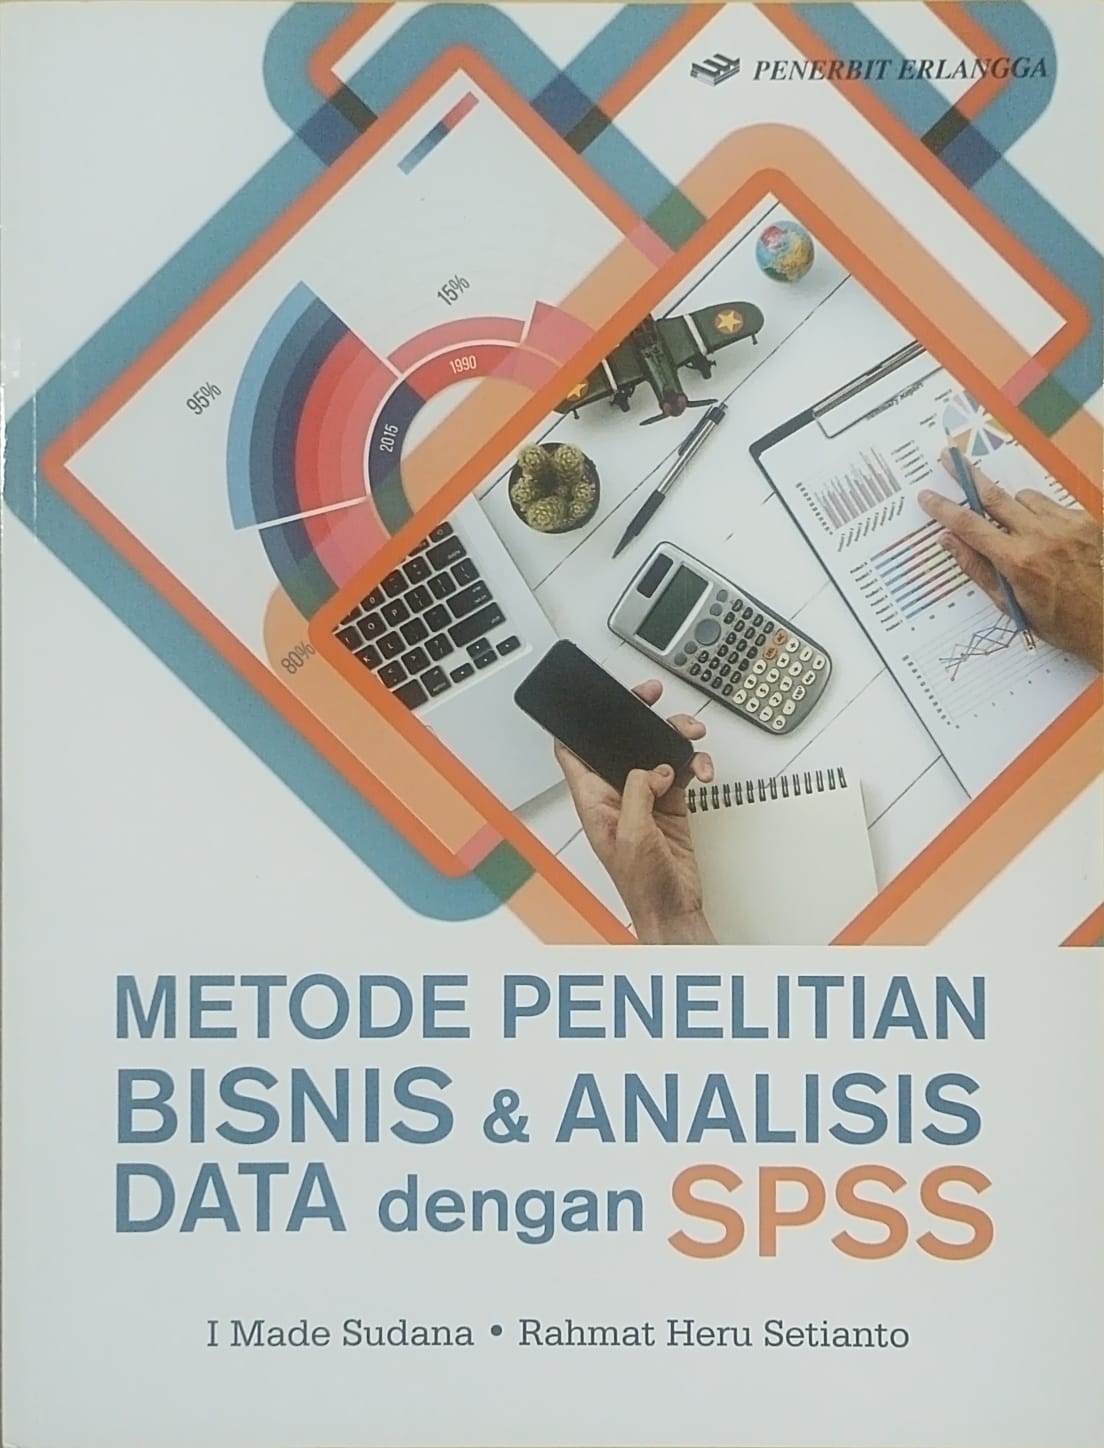 Metode penelitian bisnis dan analisis data dengan SPSS